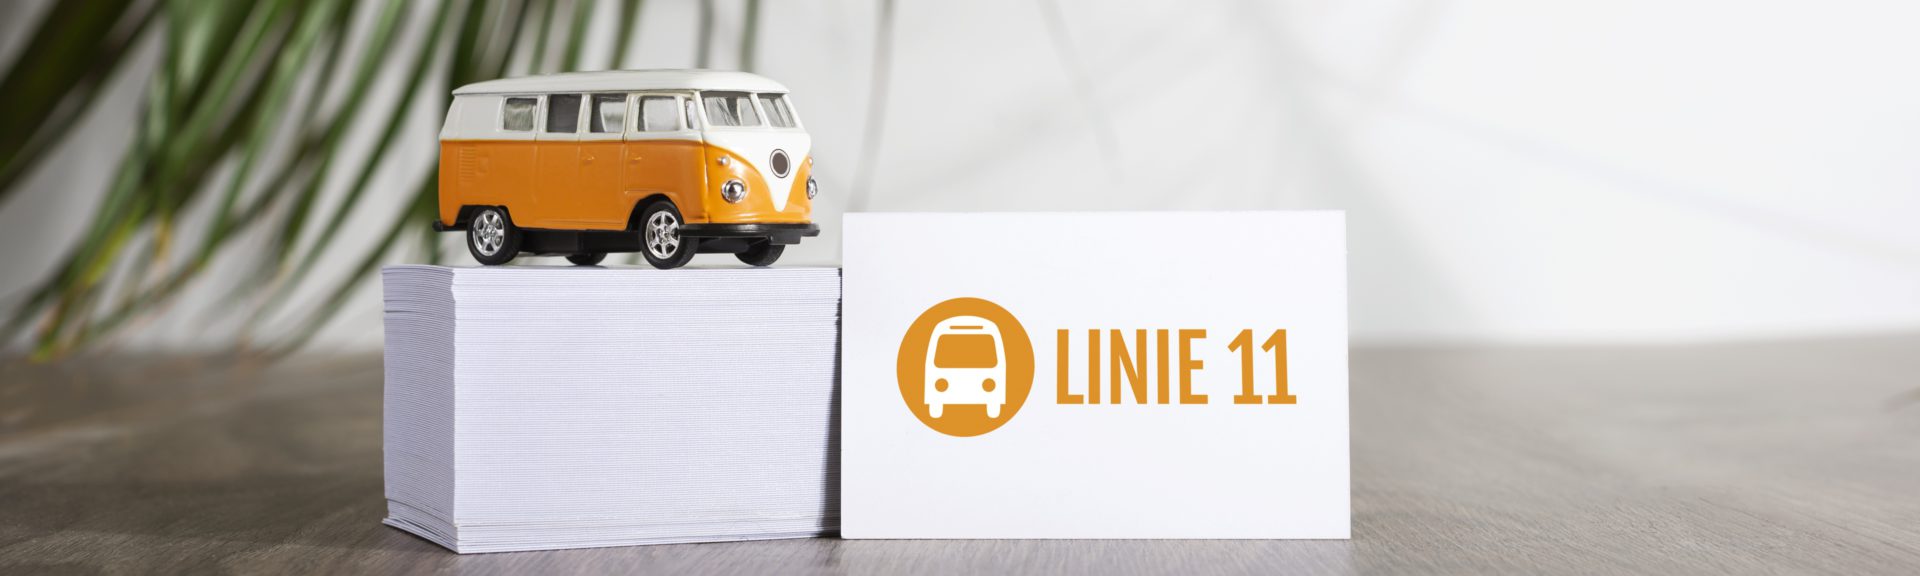 Auf einem Holztisch steht ein Stabel mit Visitenkarten. Auf dem Stapel befindet sich ein orangefarbener Spielzeug-VW-Bus mit weißem Dach. An den Stapel angelehnt steht eine einzelne Visitenkarte mit dem Logo der Linie 11.